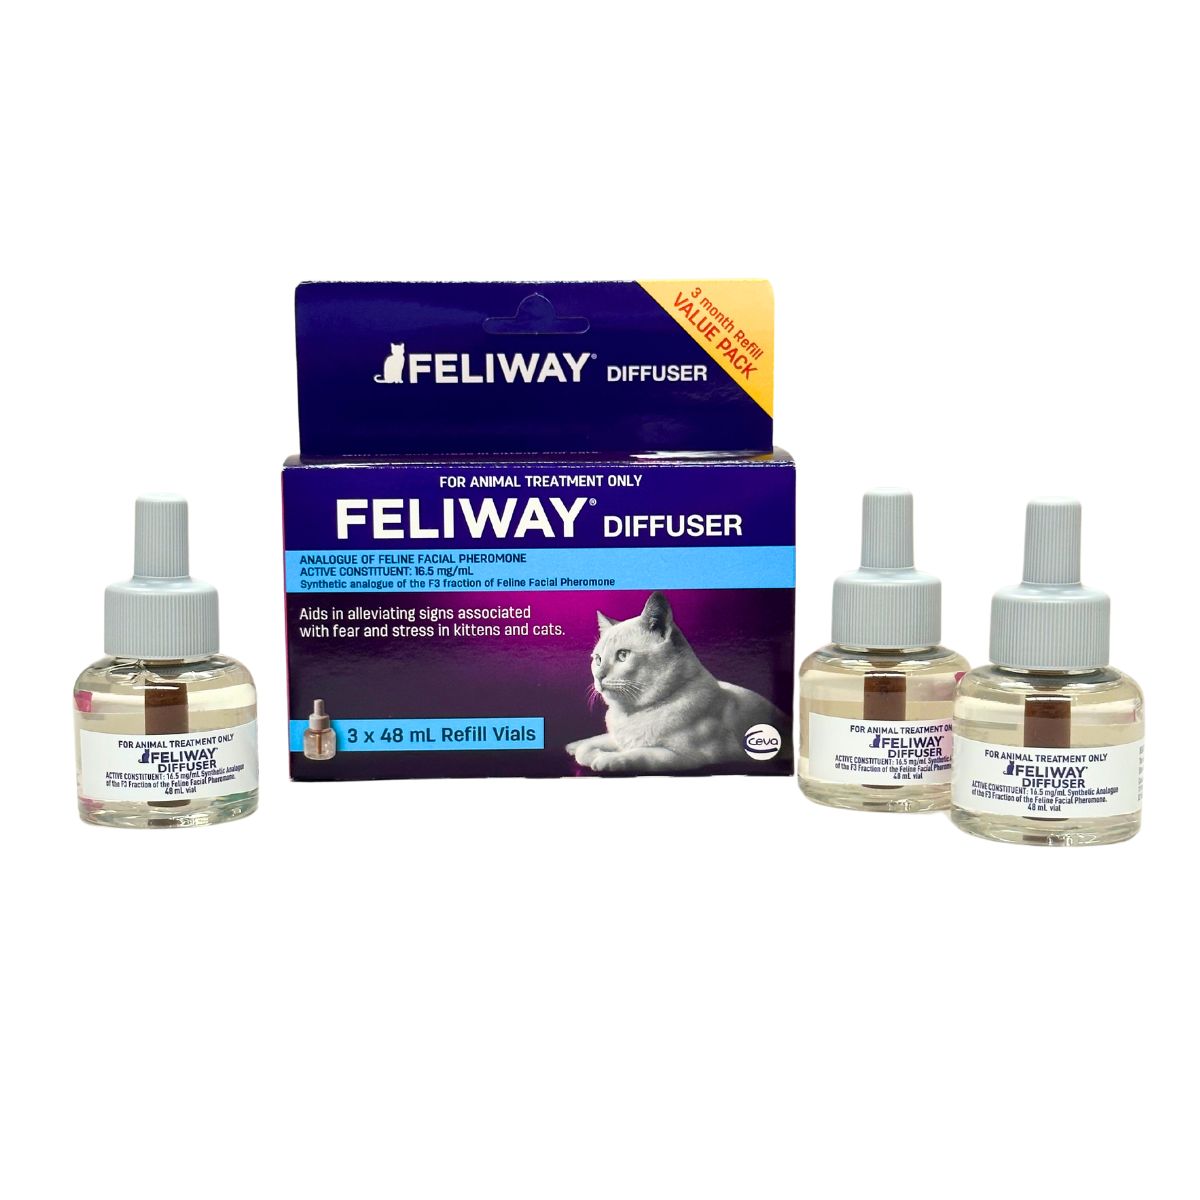 Feliway Diffuser Refill Vials Value Pack 3 x 48mL